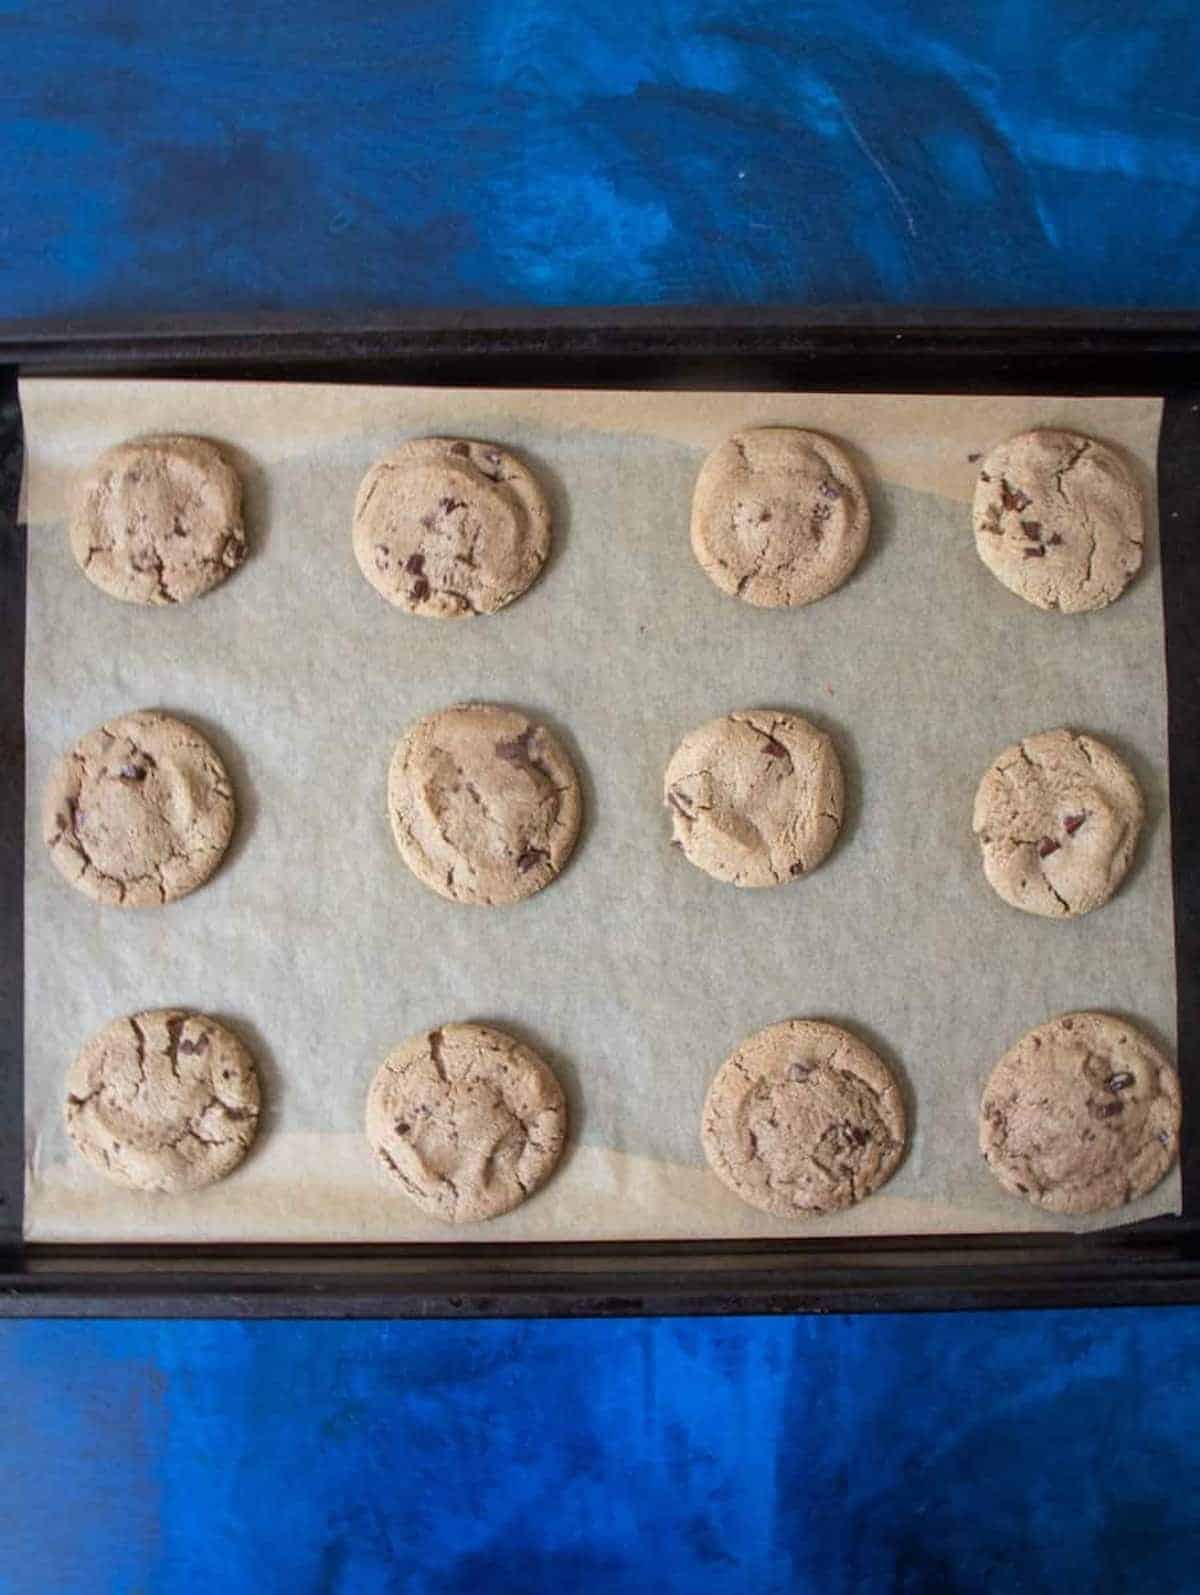 baked gluten free cookies on pan